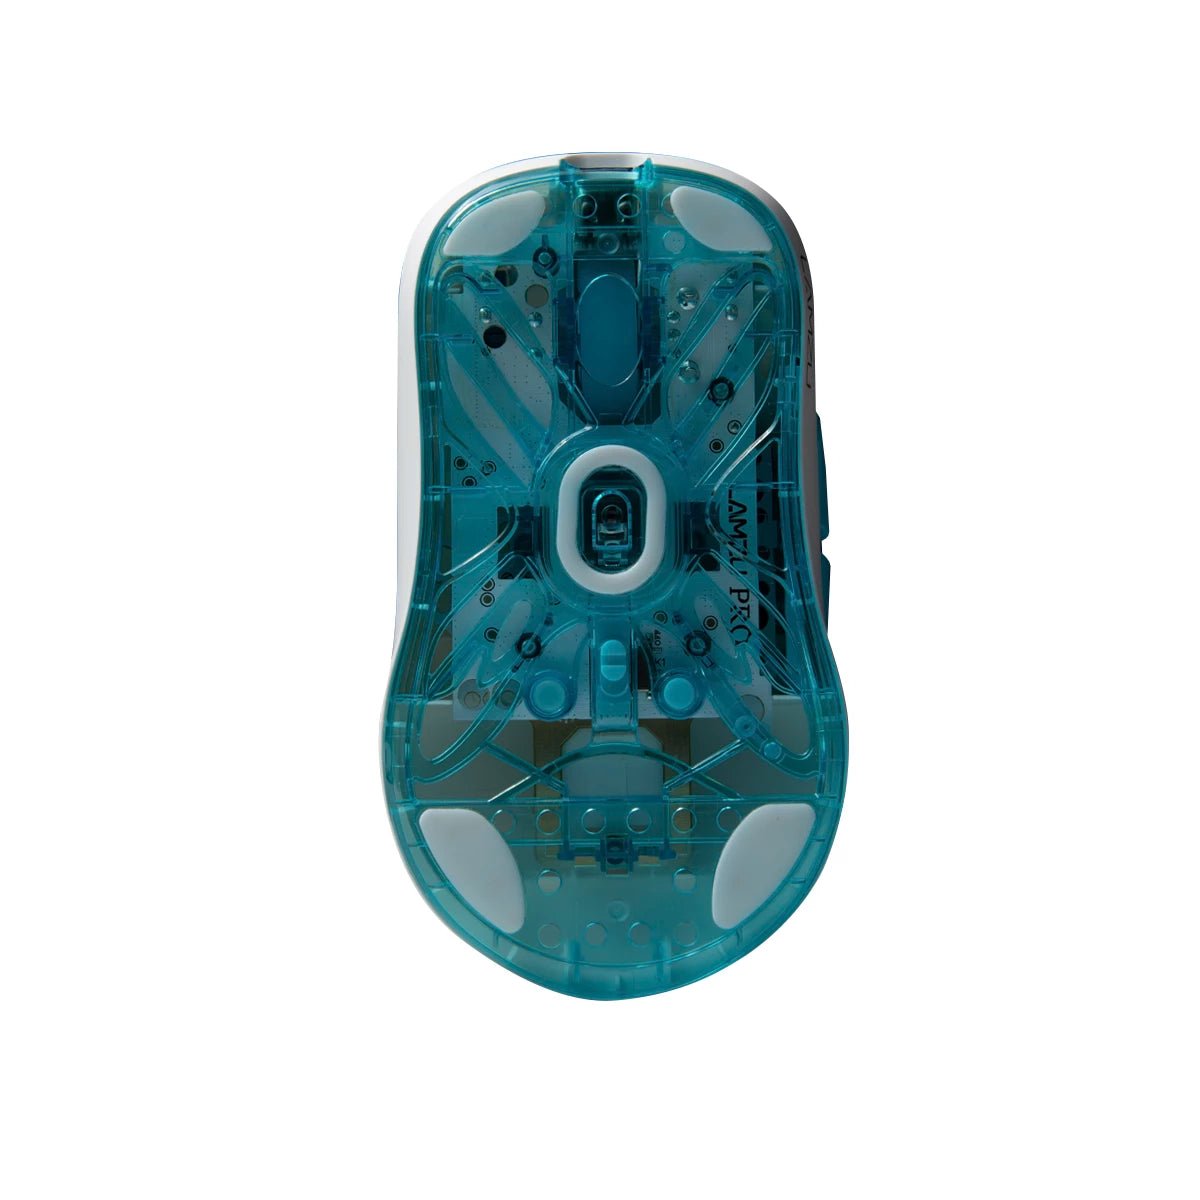 Lamzu Atlantis Mini Pro Superlight Gaming Mouse – Divinikey